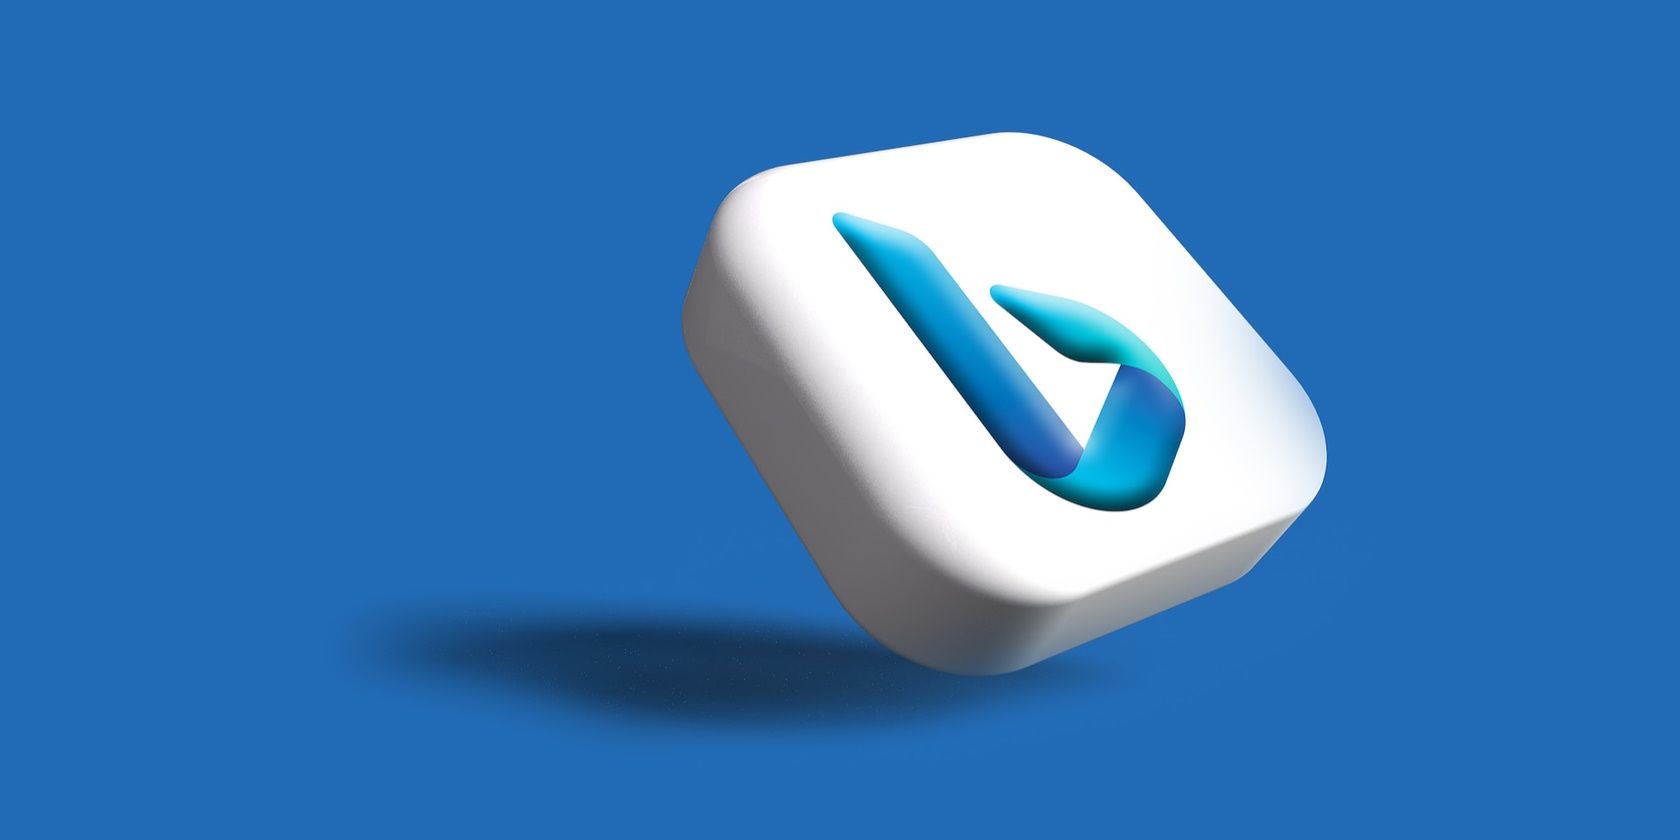 Bing's logo